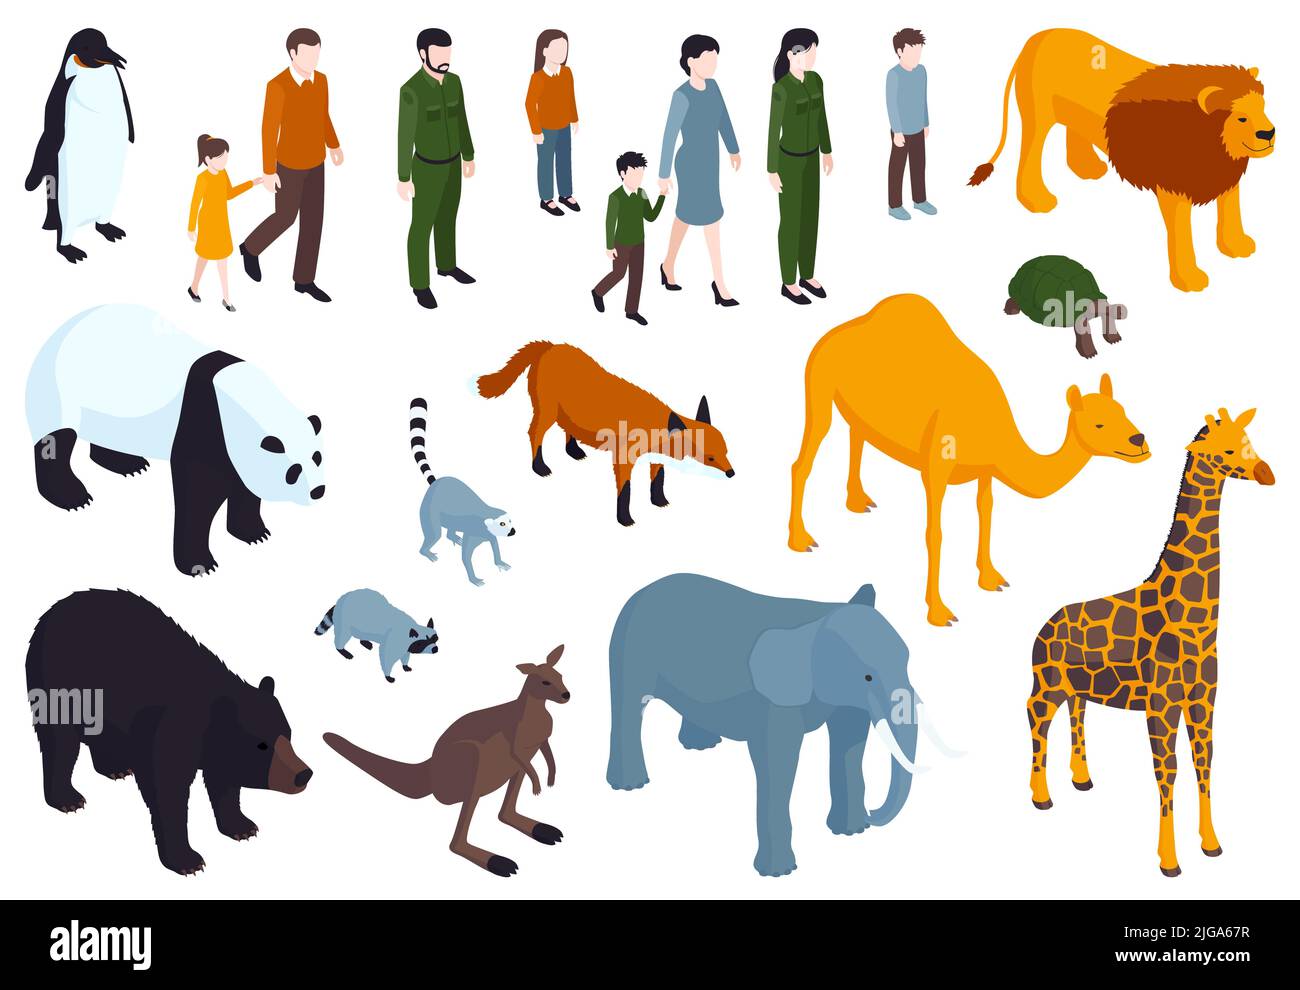 Décor isométrique de couleur de zoo avec des personnages humains isolés de visiteurs et de divers animaux sur fond vierge illustration vectorielle Illustration de Vecteur